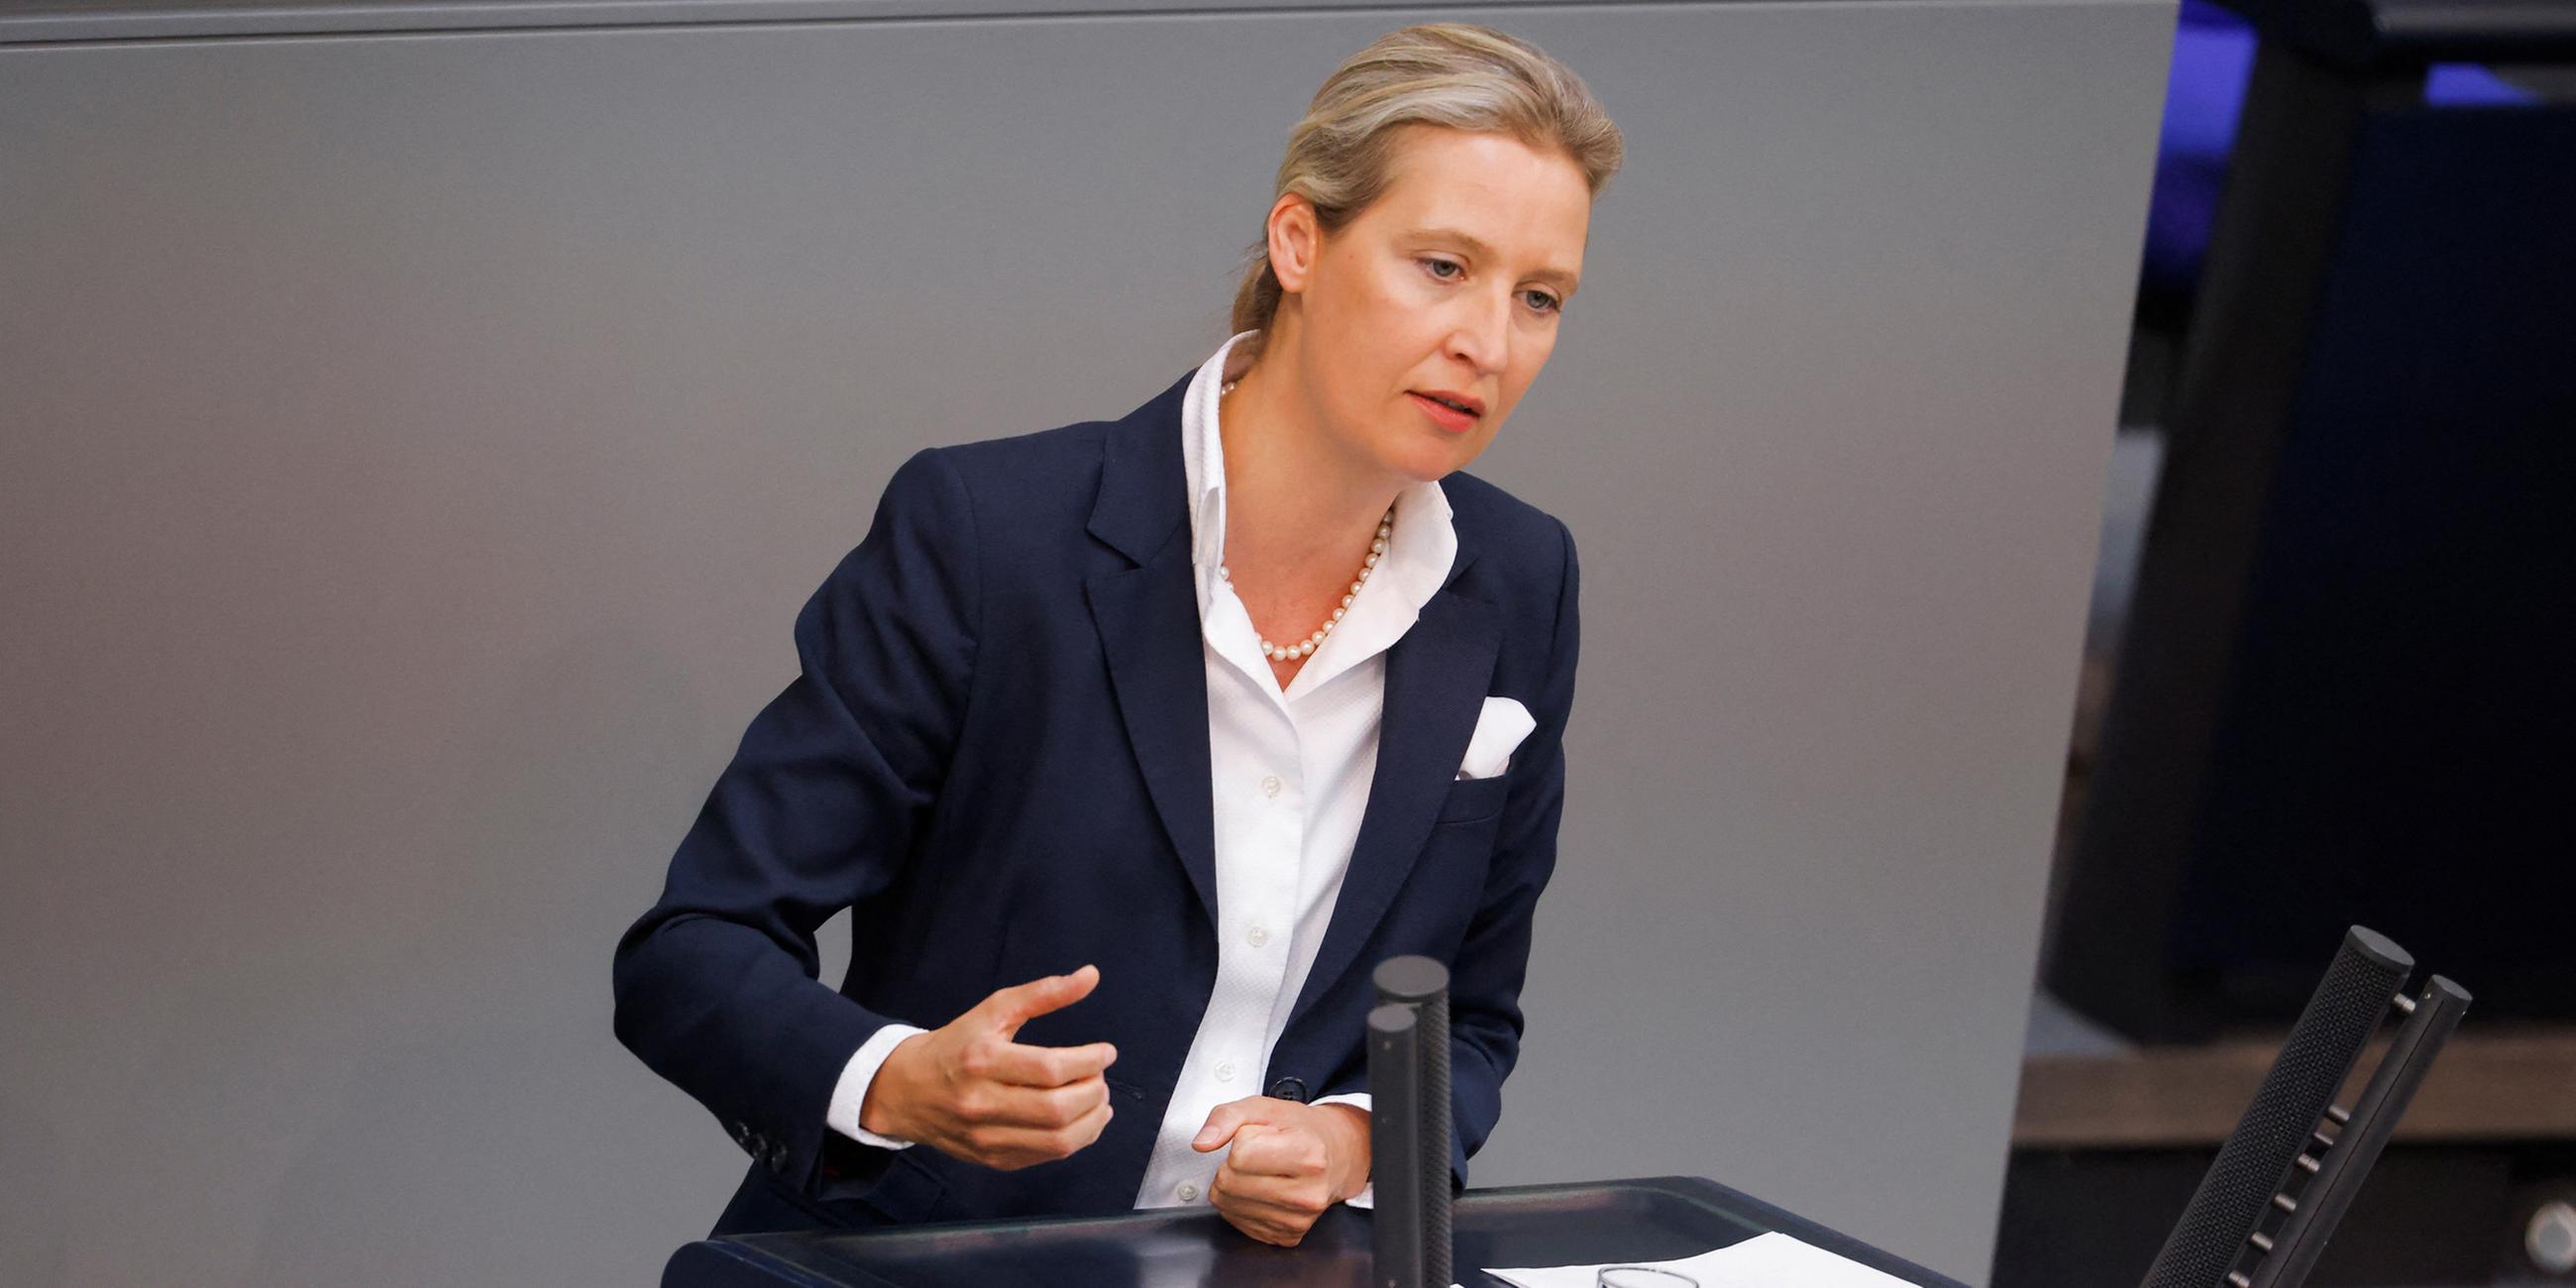 Alice Weidel spricht im Bundestag